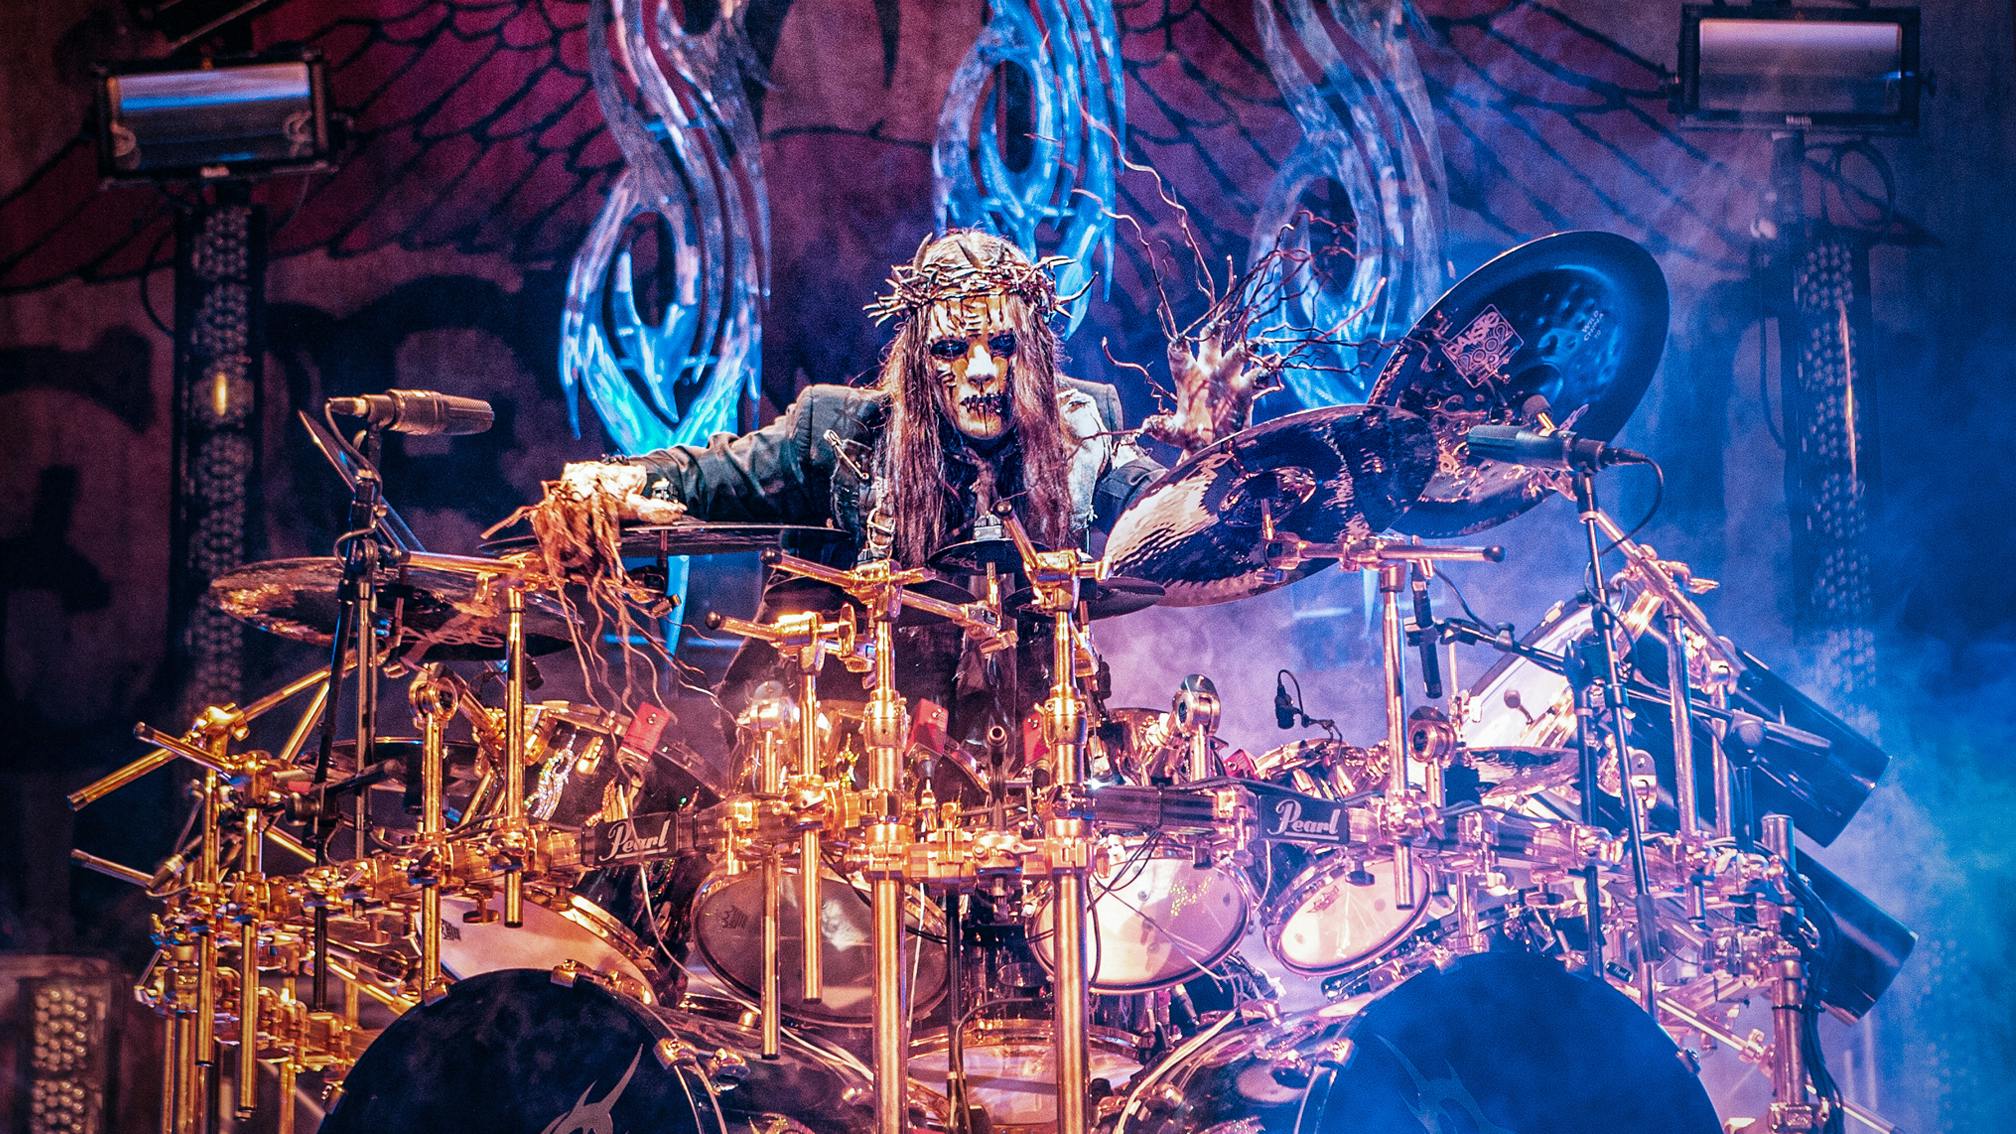 Joey-Jordison-Slipknot-drum-kit-live-credit-Paul-Harries.jpg